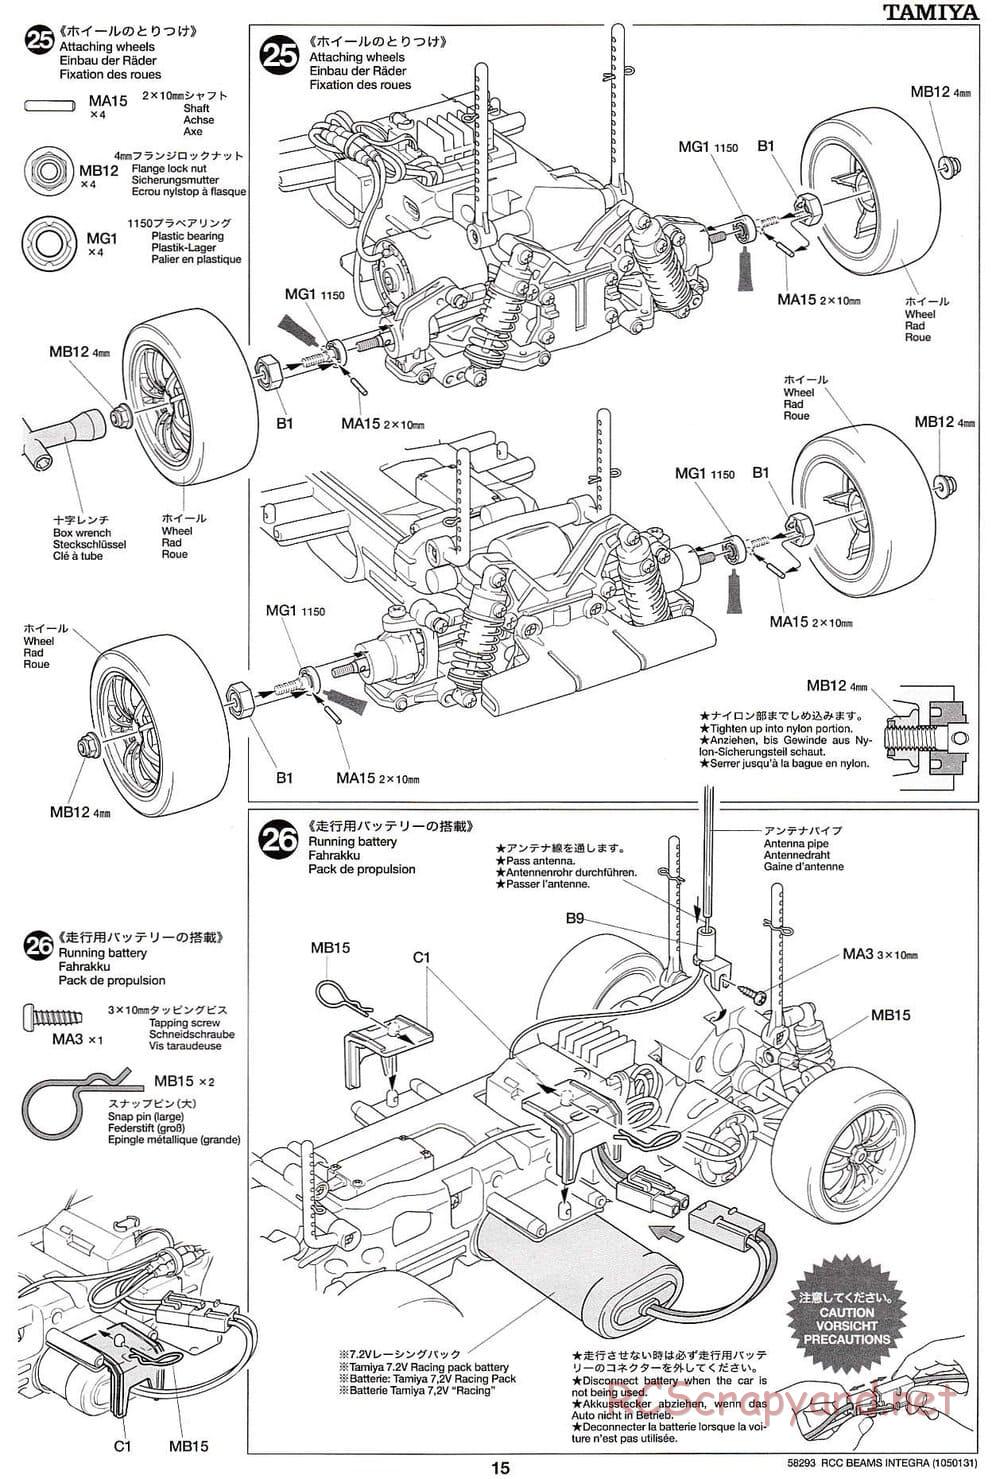 Tamiya - Beams Integra - TL-01 LA Chassis - Manual - Page 15